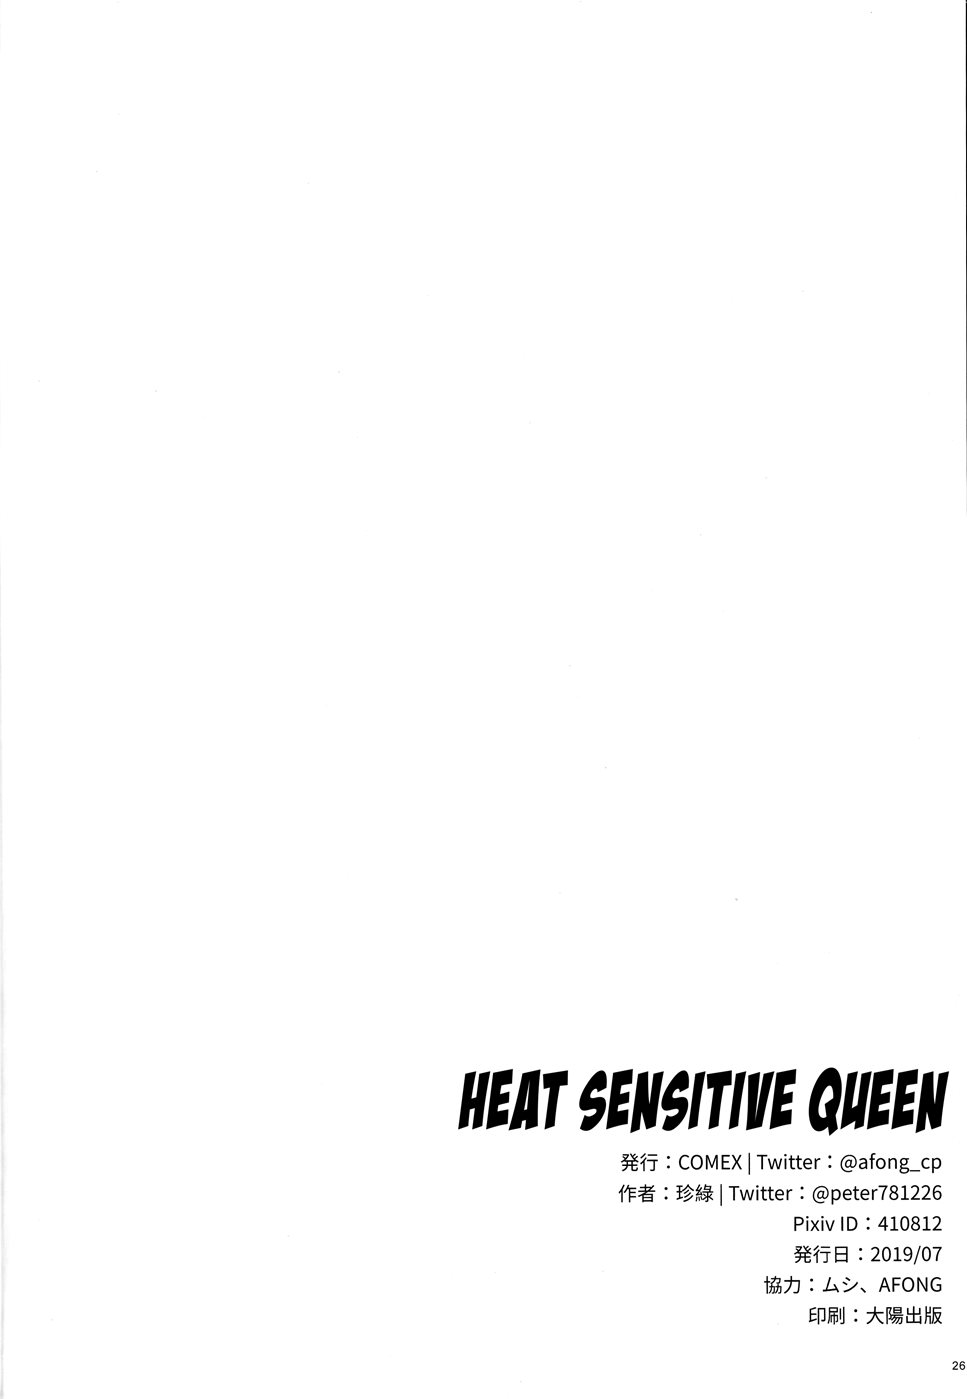 Heat Sensitive Queen